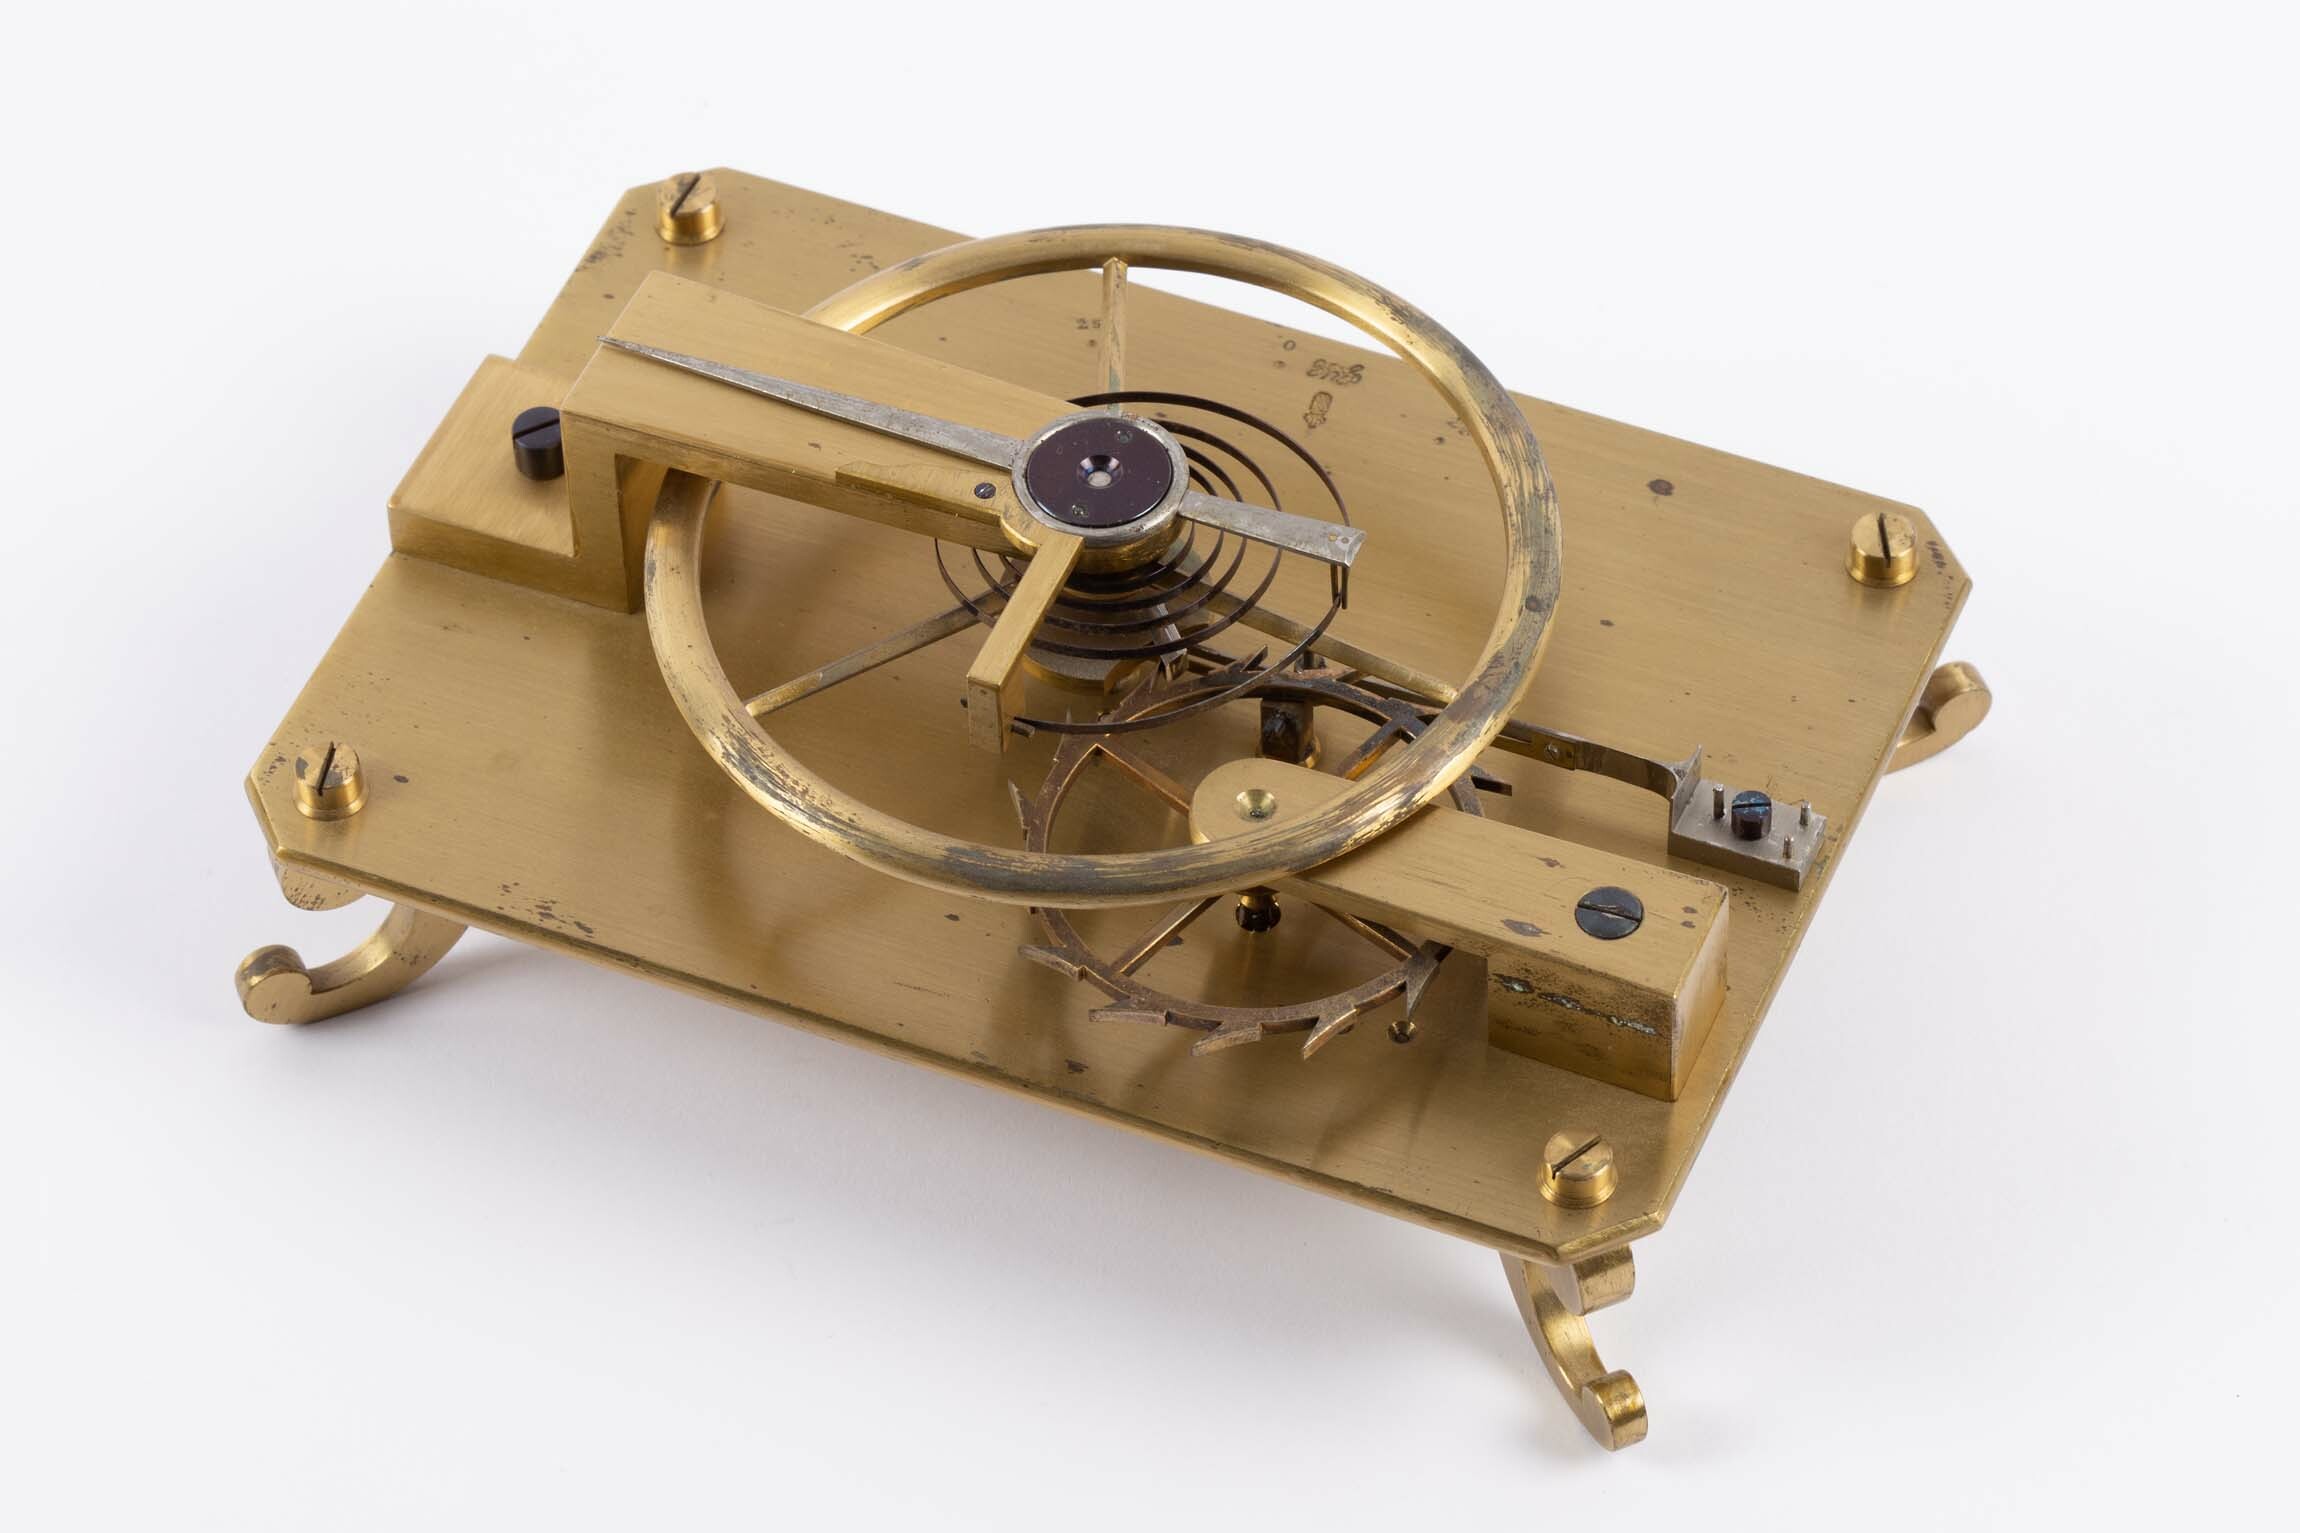 Gangmodell freie Federhemmung für Taschenchronometer, Uhrmacherschule Furtwangen, um 1860 (Deutsches Uhrenmuseum CC BY-SA)